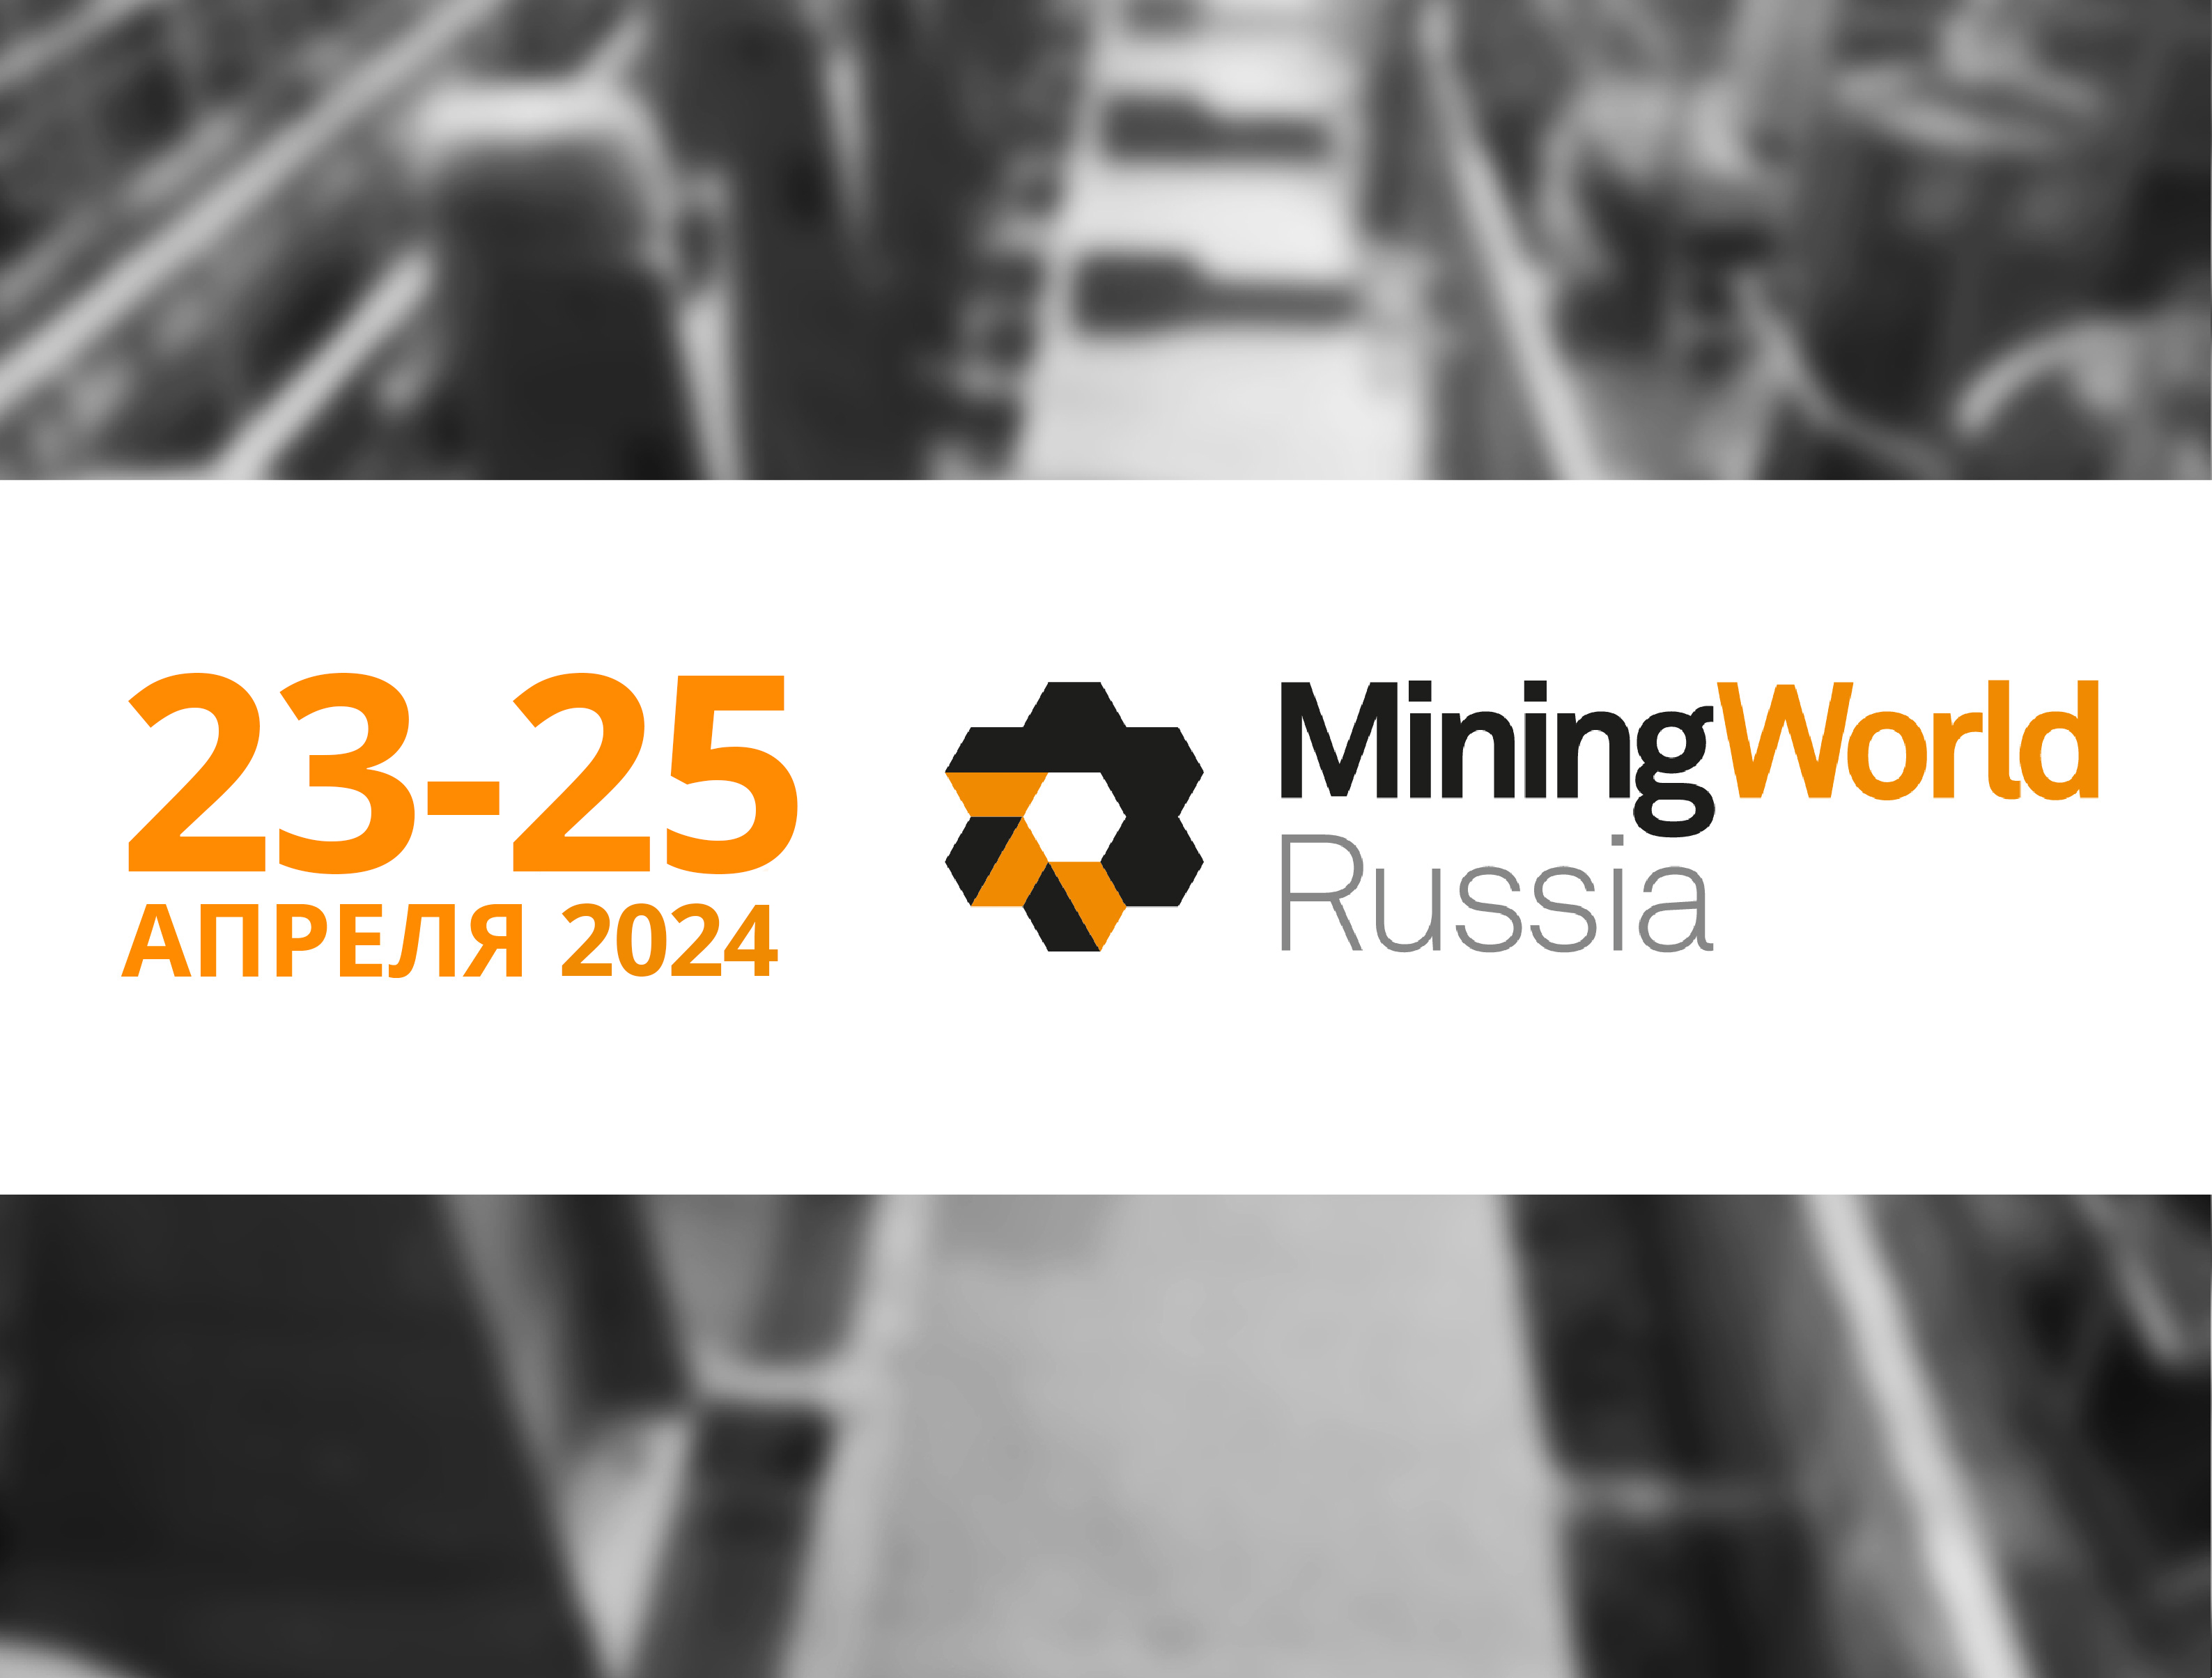 ПАССАТСТАЛЬ примет участие в выставке MiningWorld Russia 2024